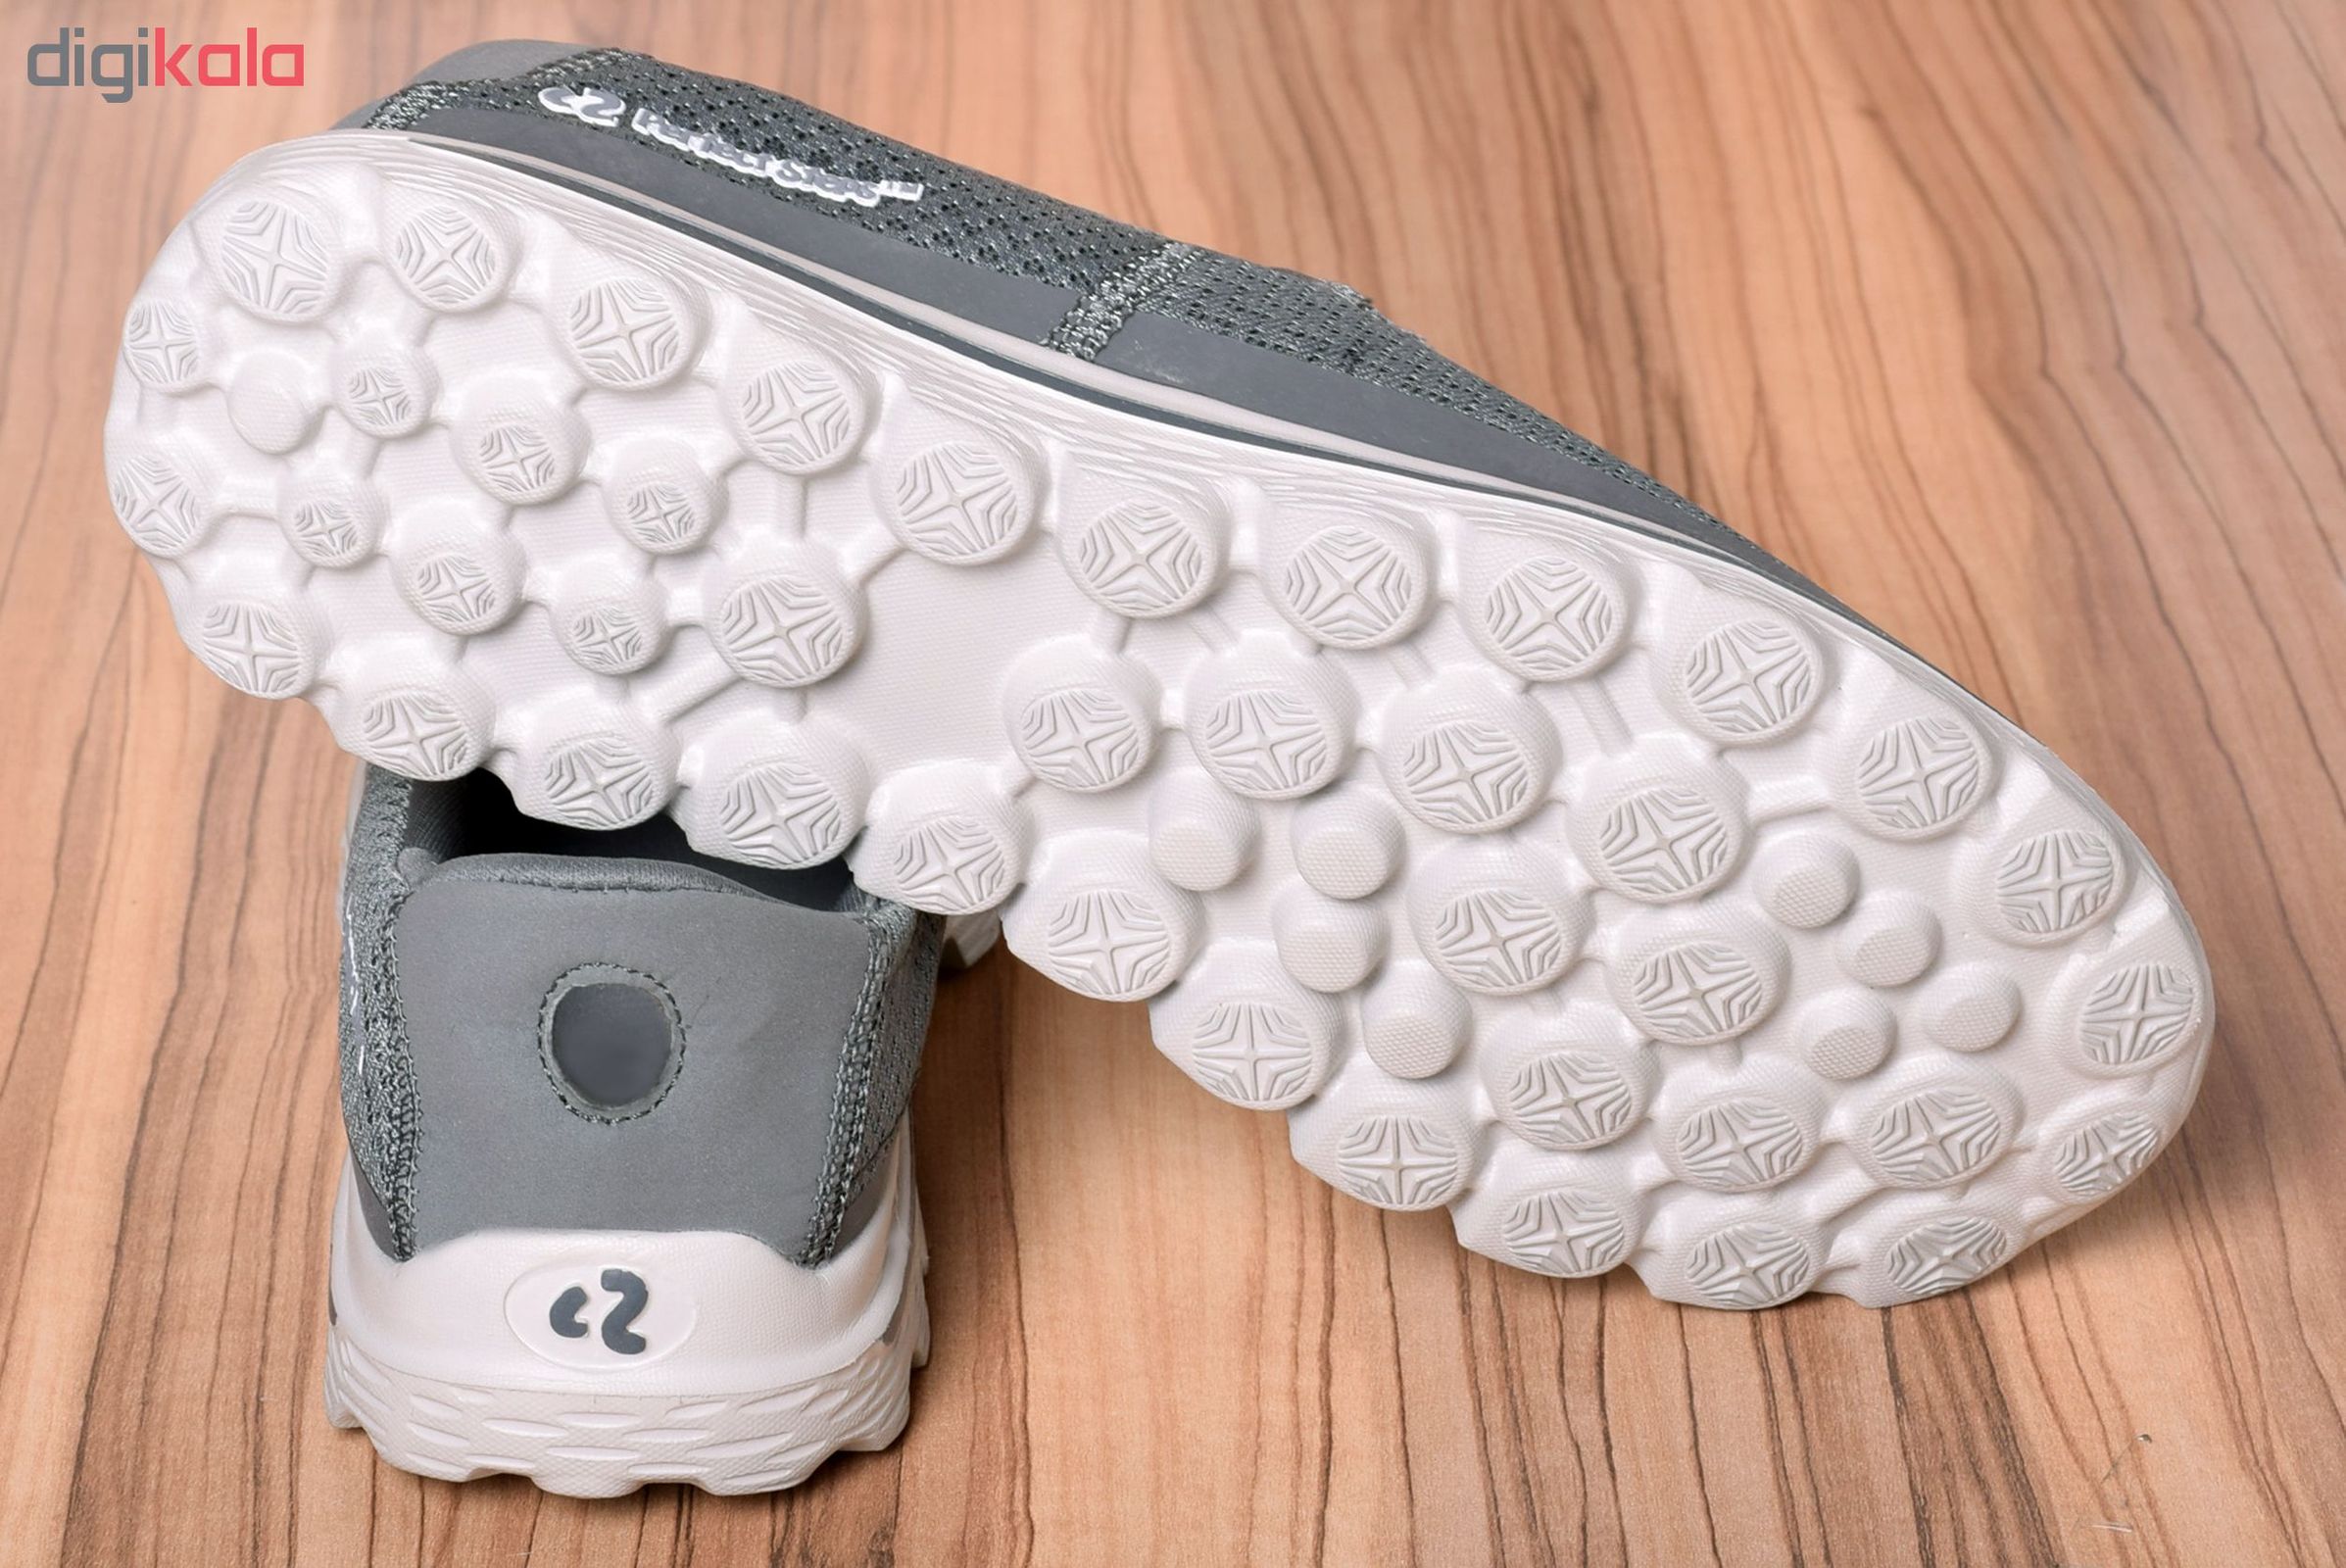 کفش مخصوص پیاده روی مردانه پرفکت استپس مدل اسکای کد GRY-1770